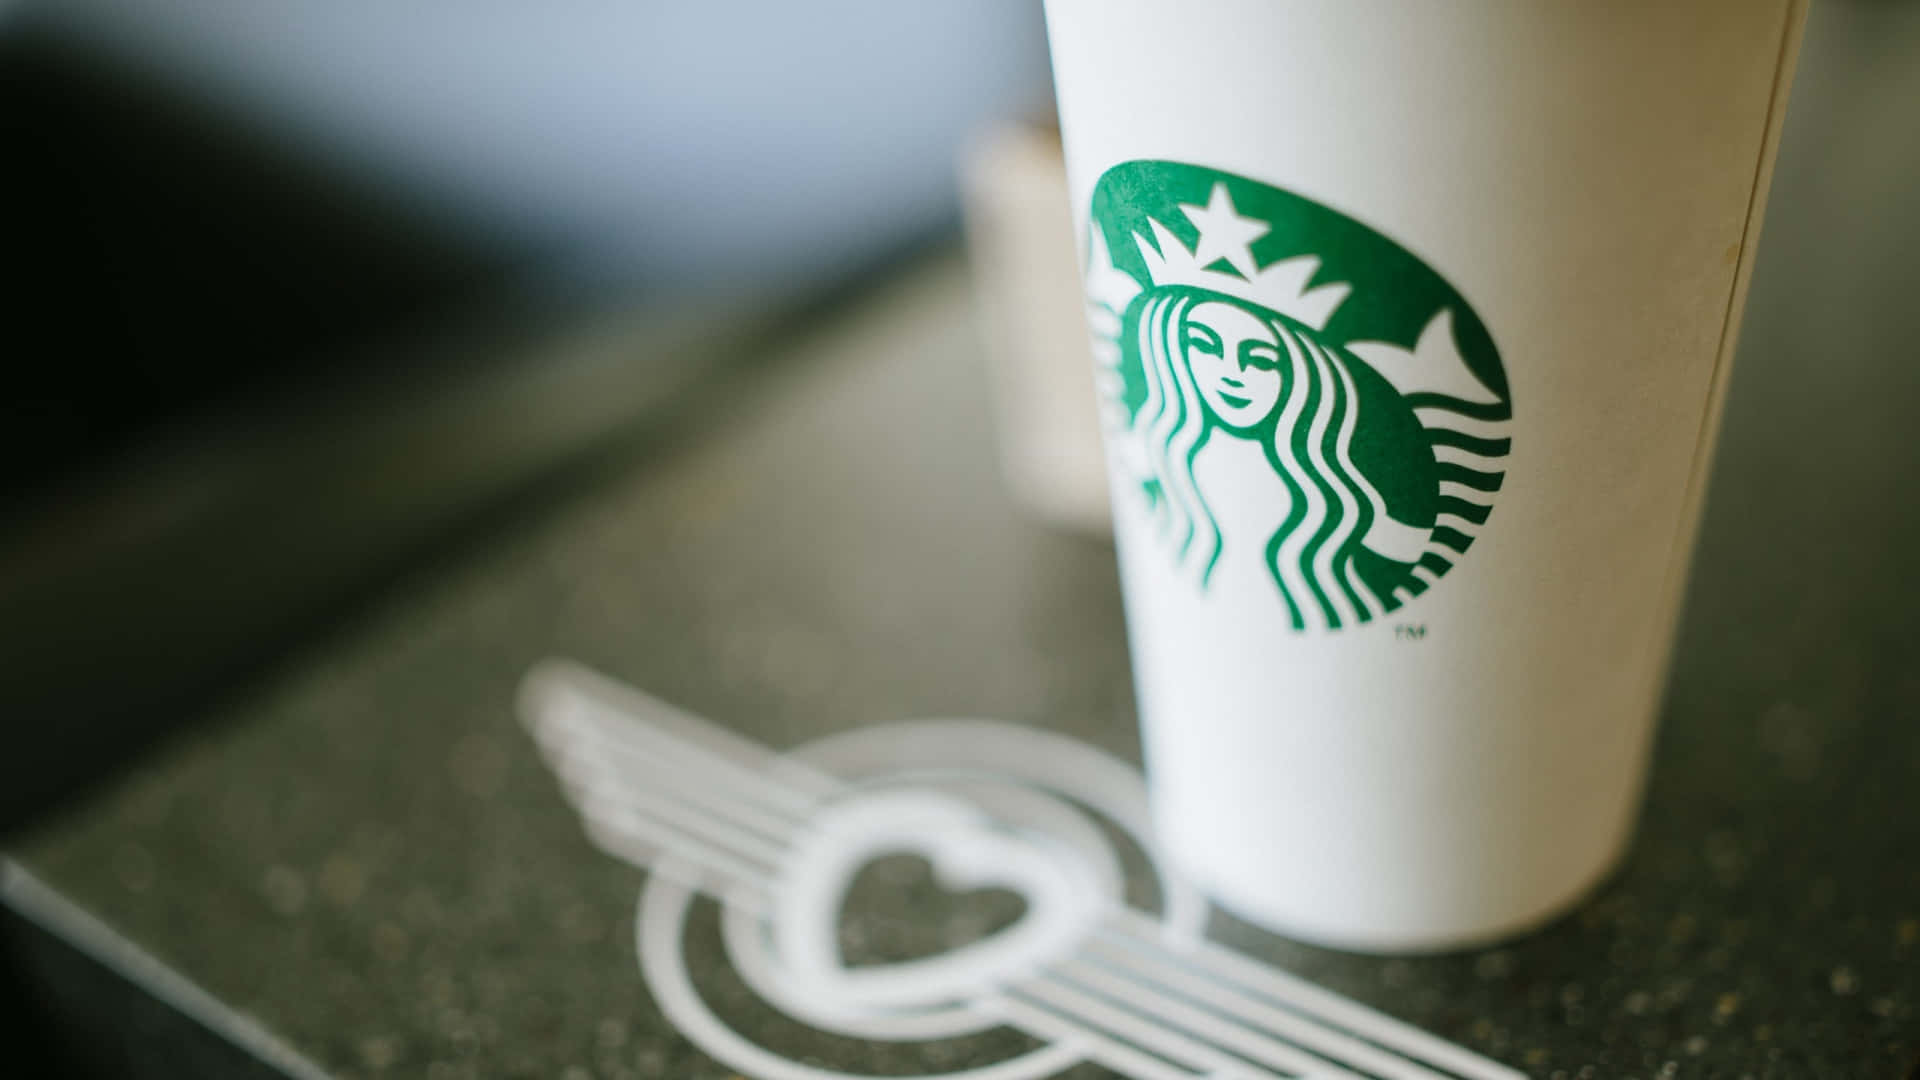 Starbuckskaffeetasse Mit Logo Oben Drauf.